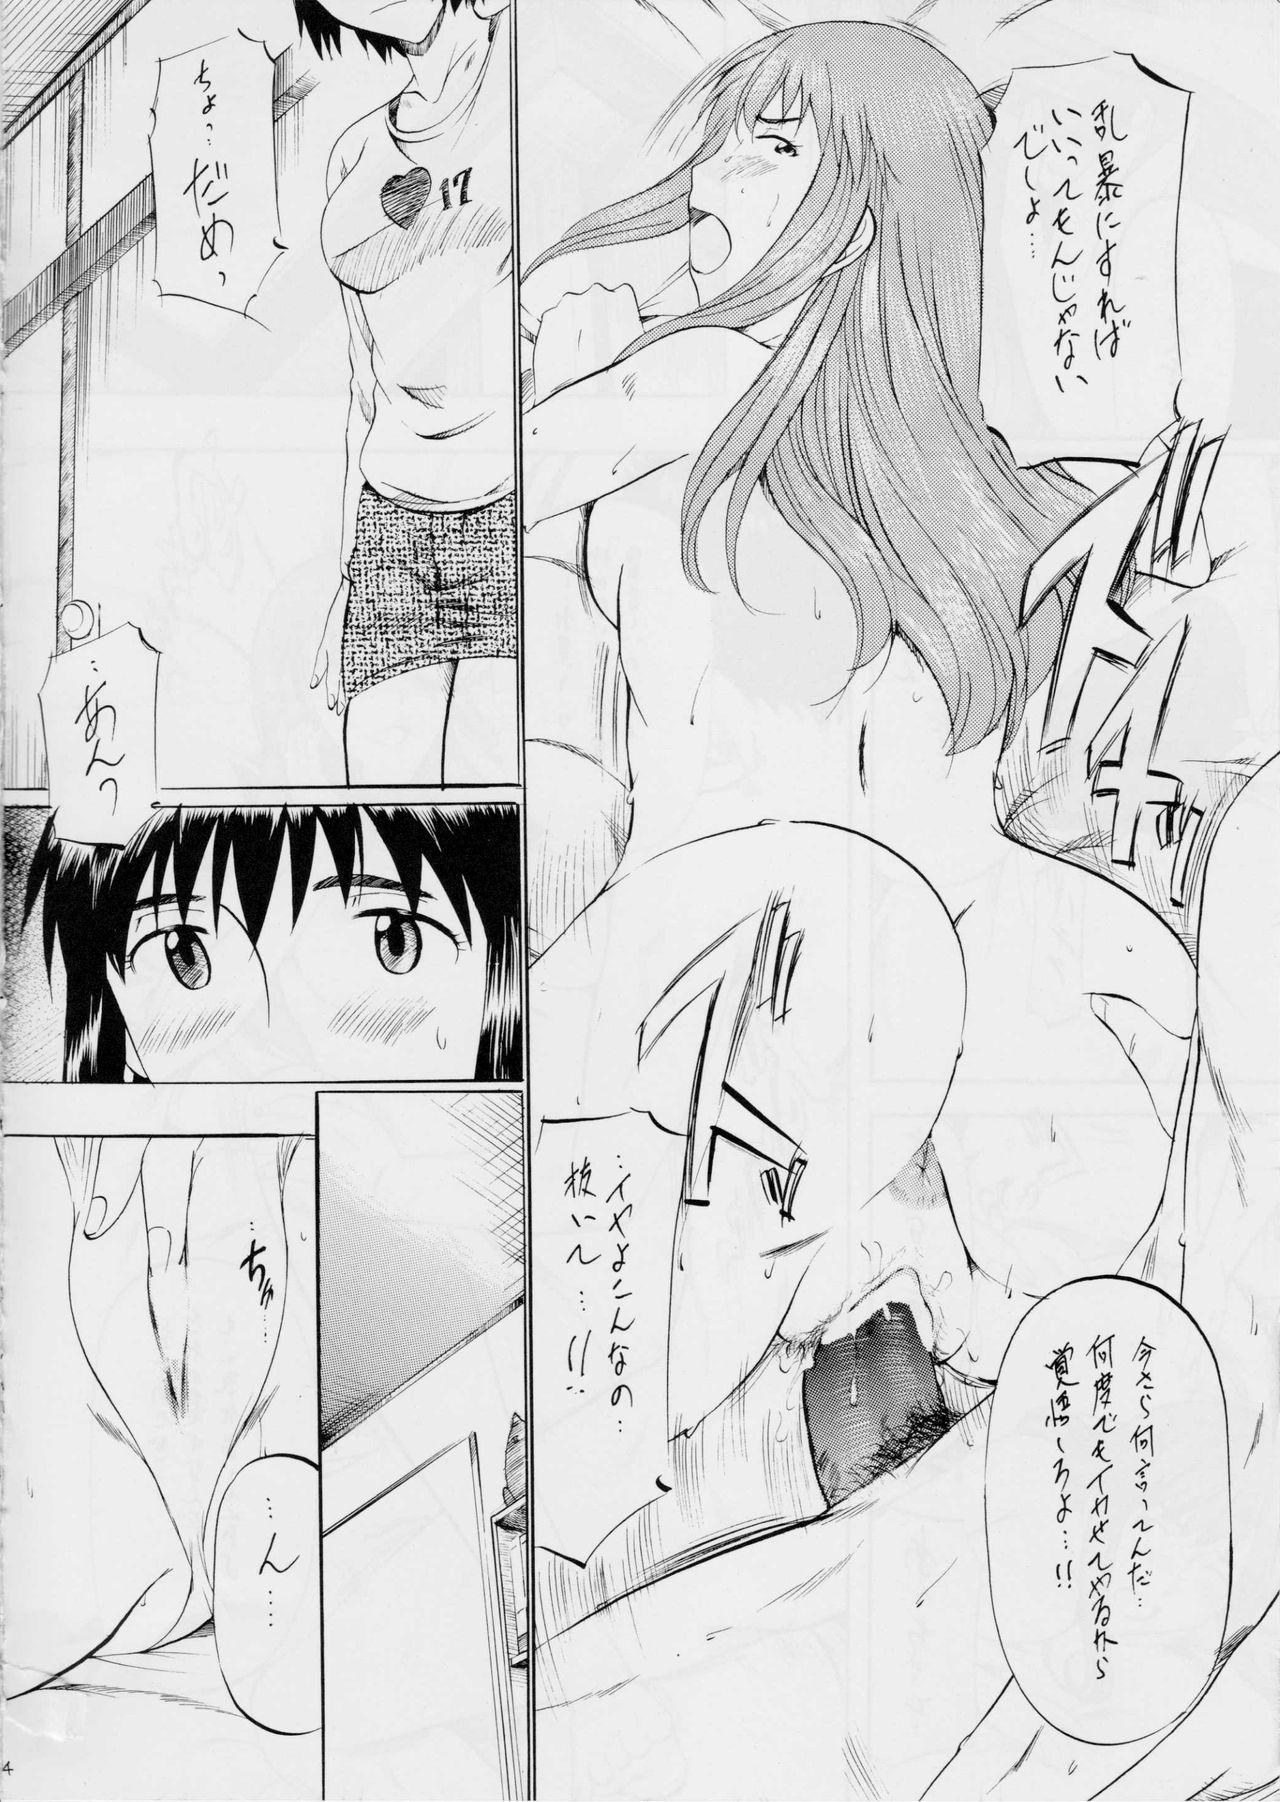 Hard Core Free Porn Fuuka to! 2 - Yotsubato Sentando - Page 3